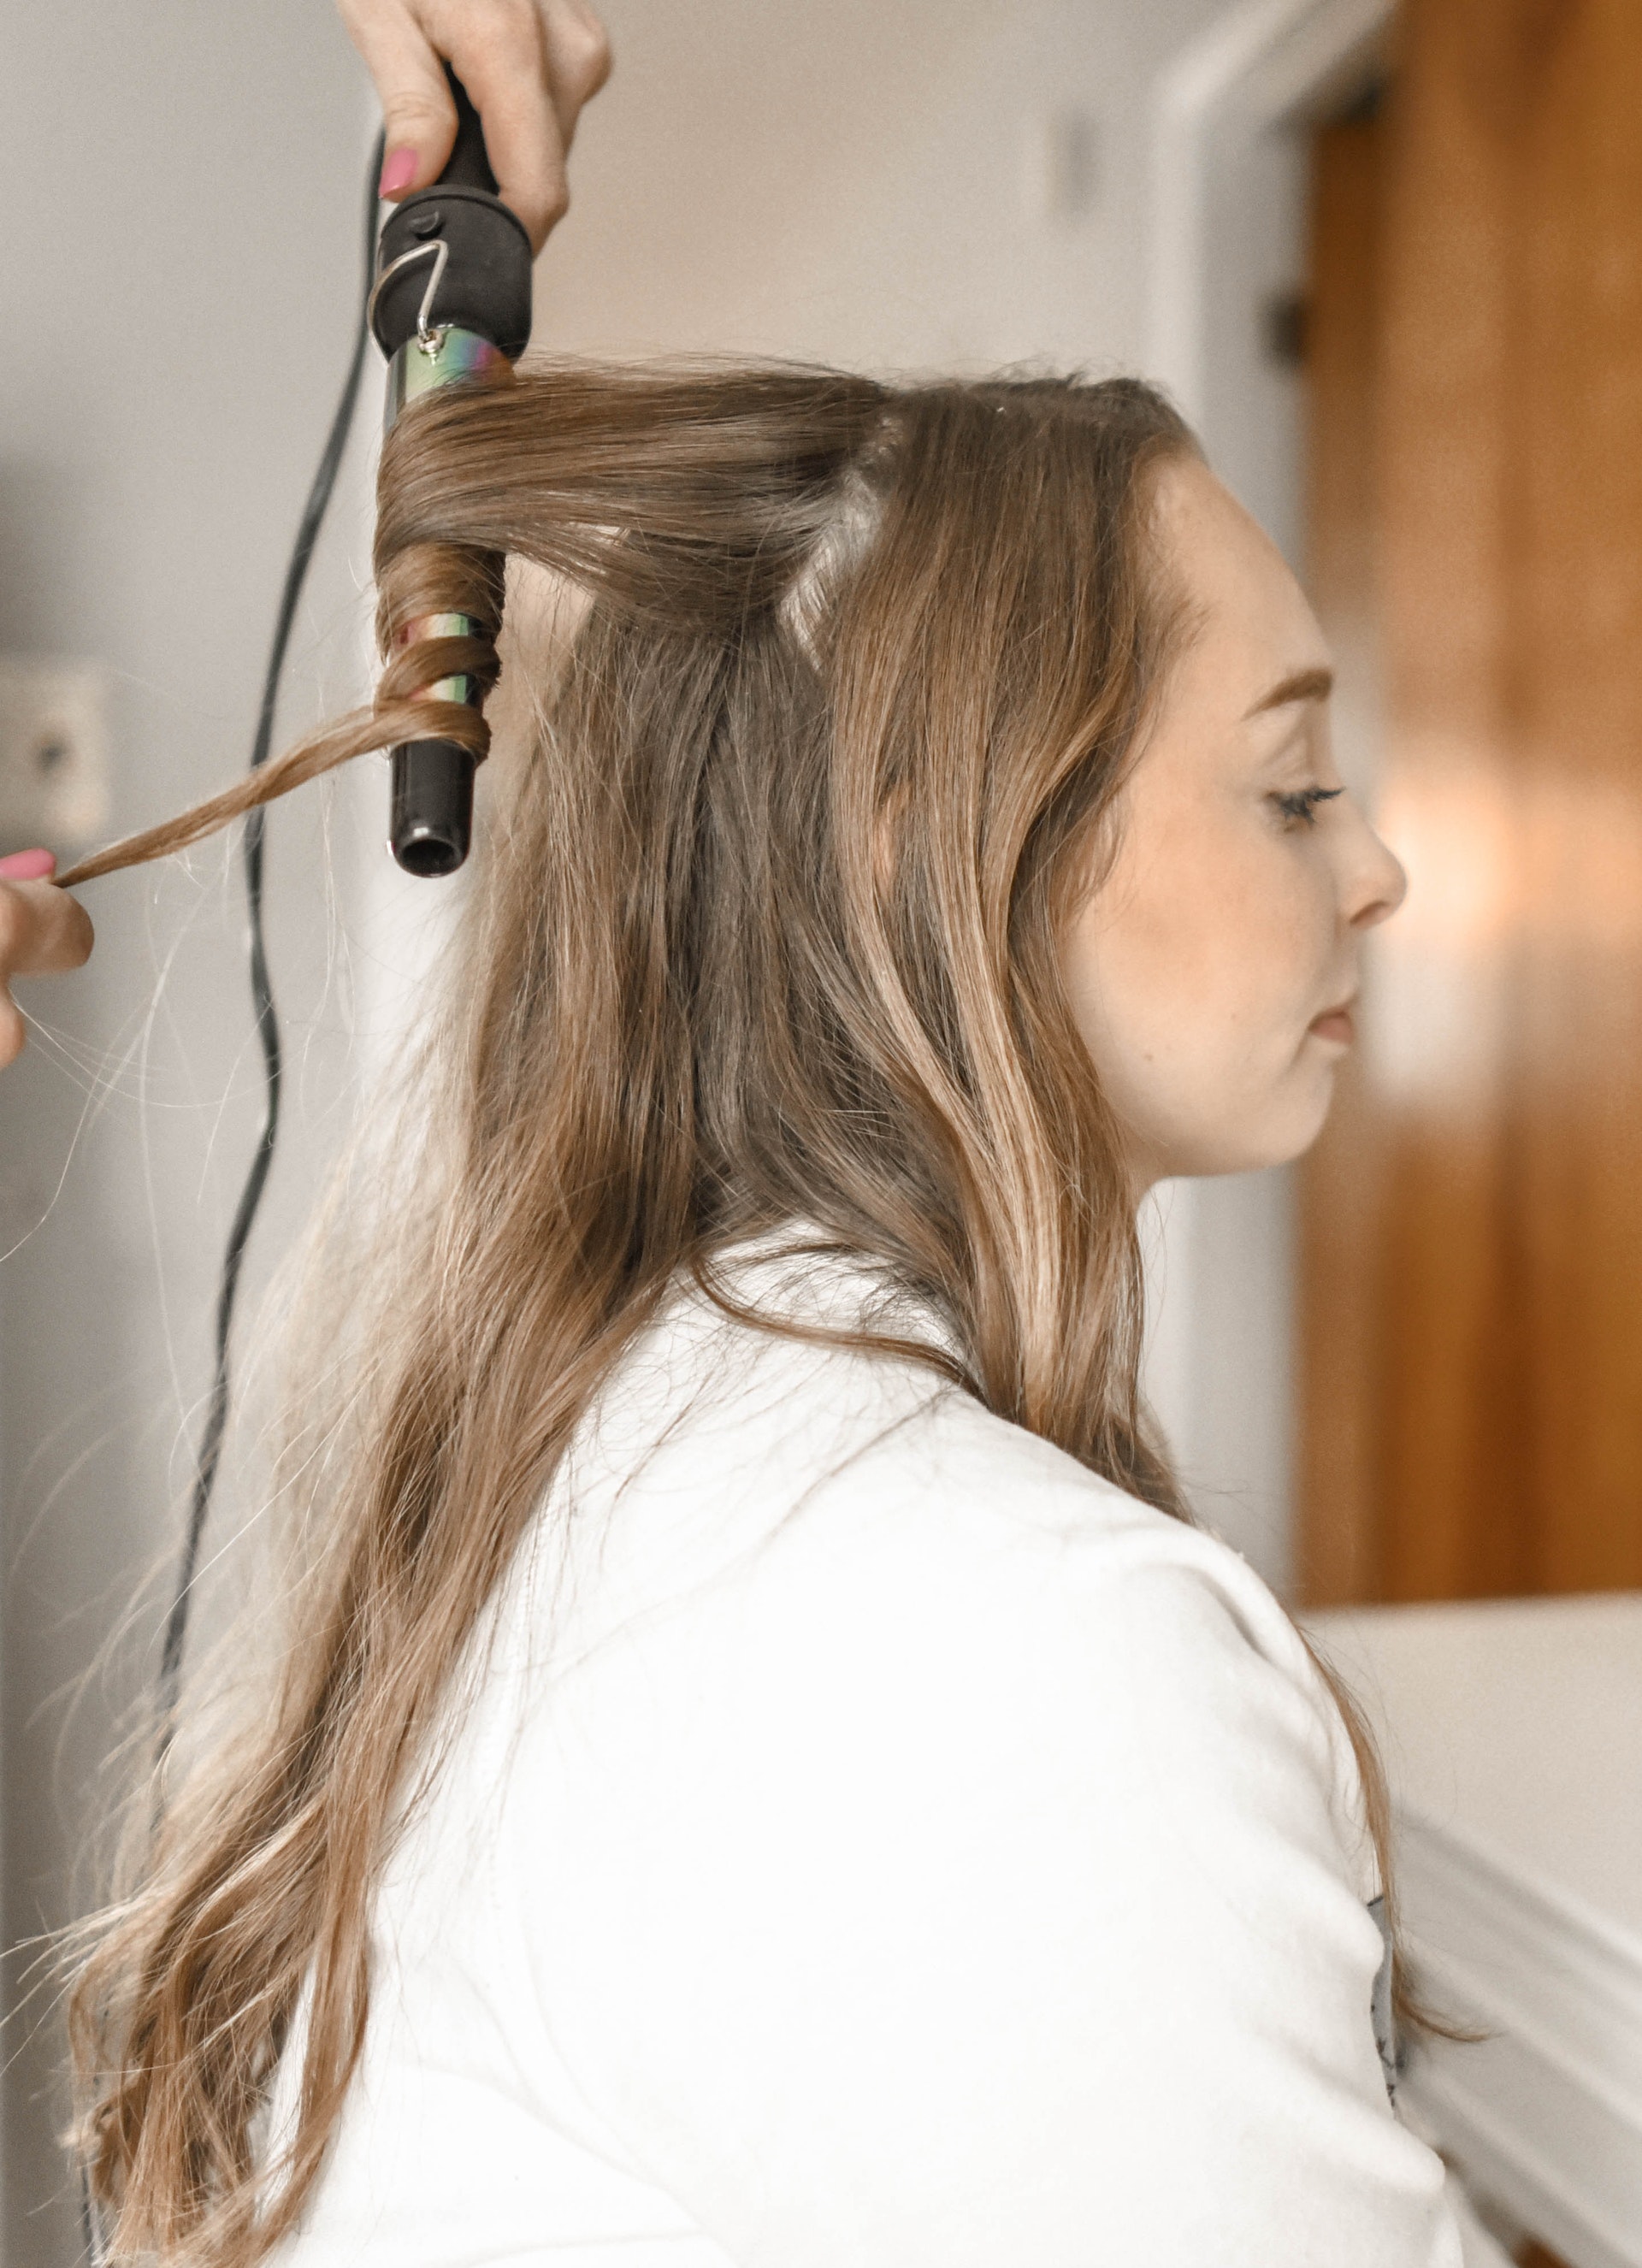 Une femme qui se fait boucler les cheveux | Source : Pexels